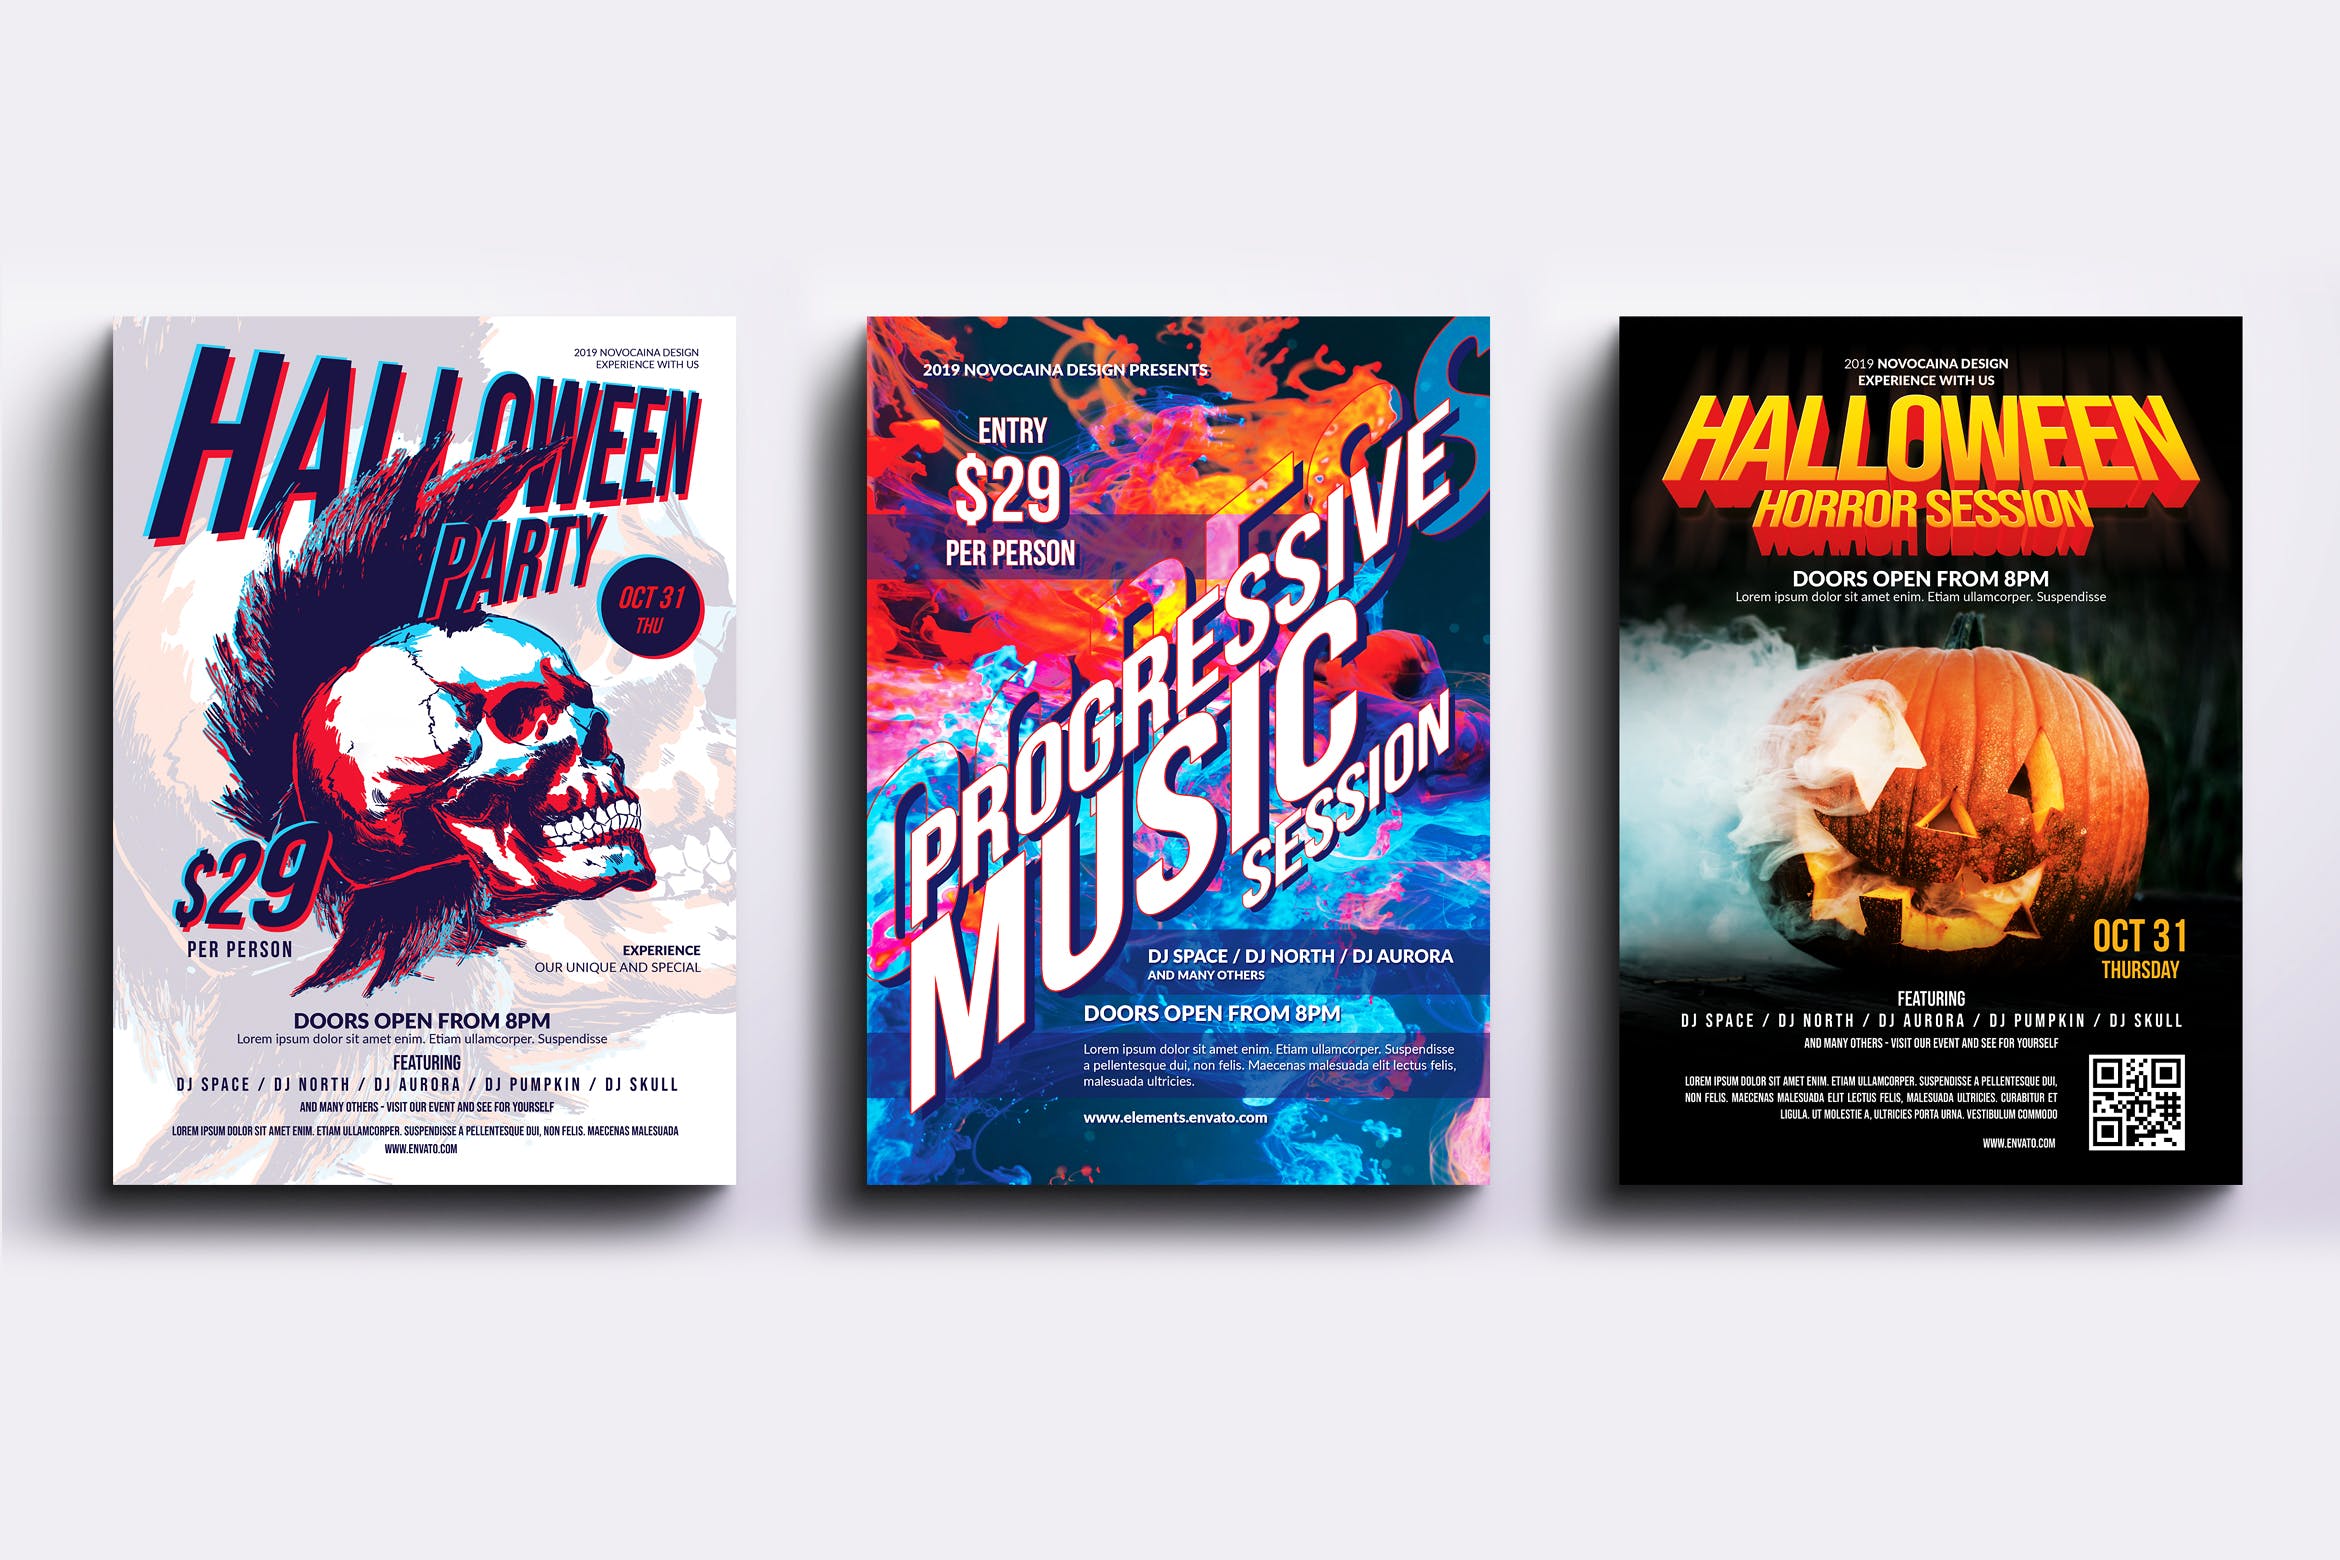 迪斯科音乐舞厅主题活动派对海报PSD素材蚂蚁素材精选模板合集v4 Event Party Posters & Flyers Bundle V4插图